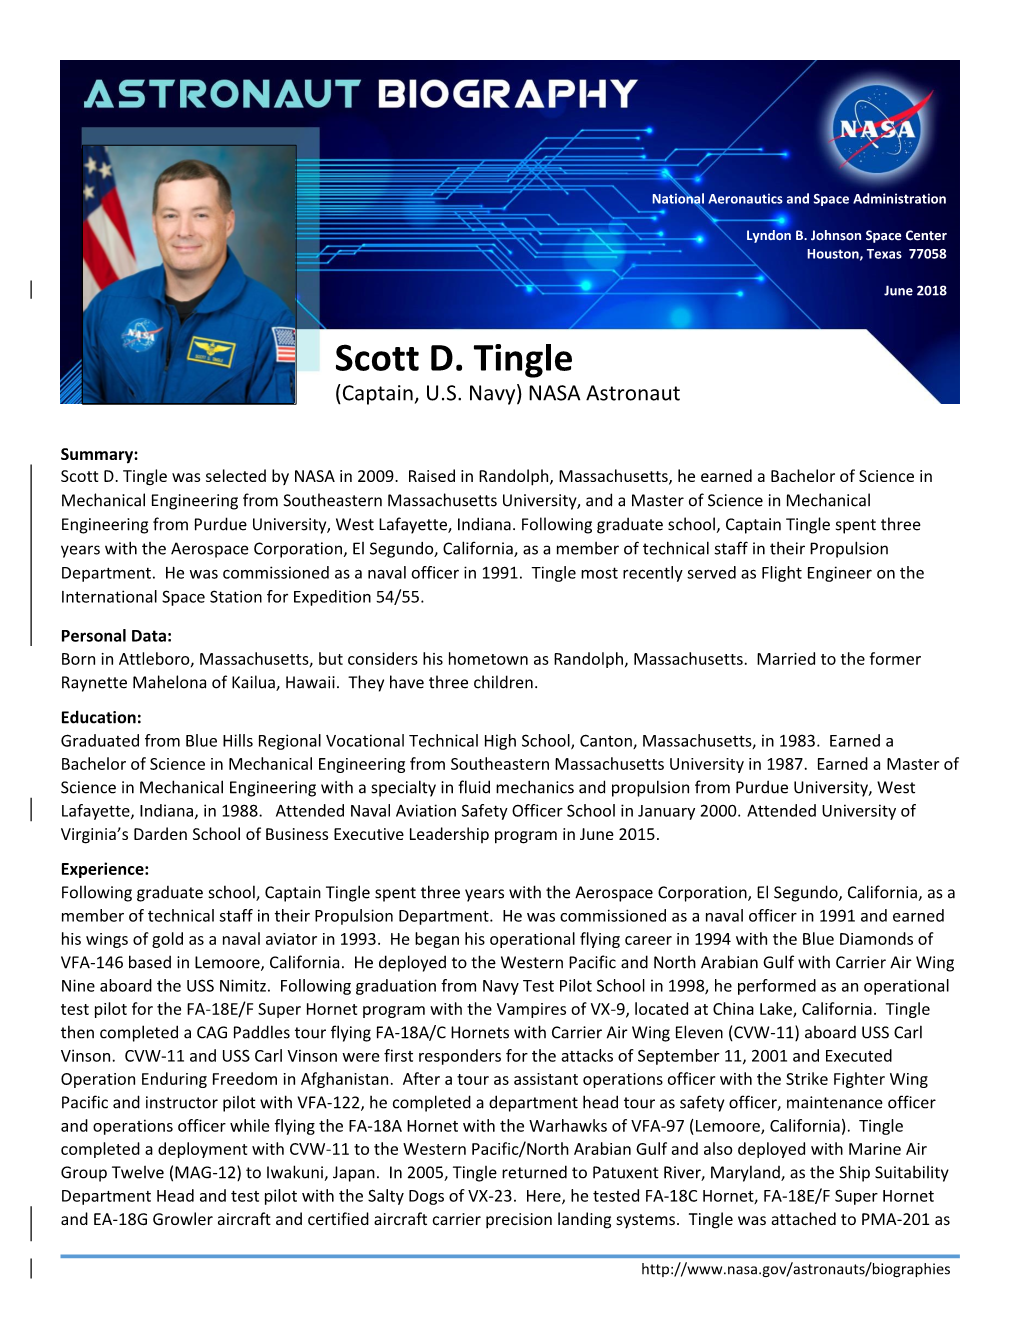 Scott D. Tingle (Captain, U.S